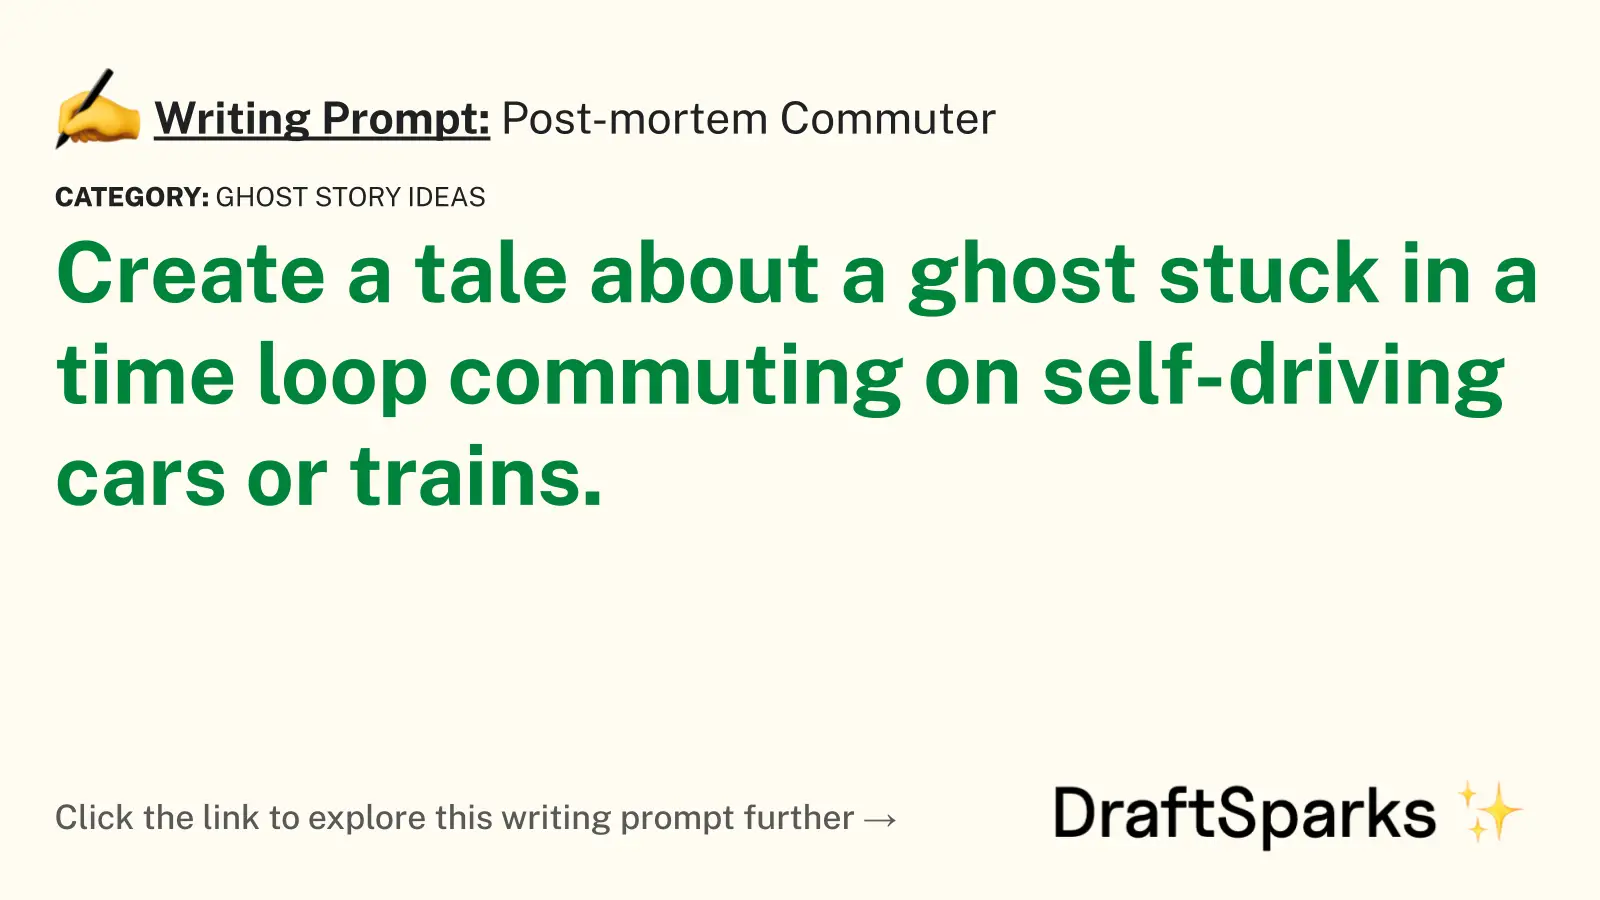 Post-mortem Commuter